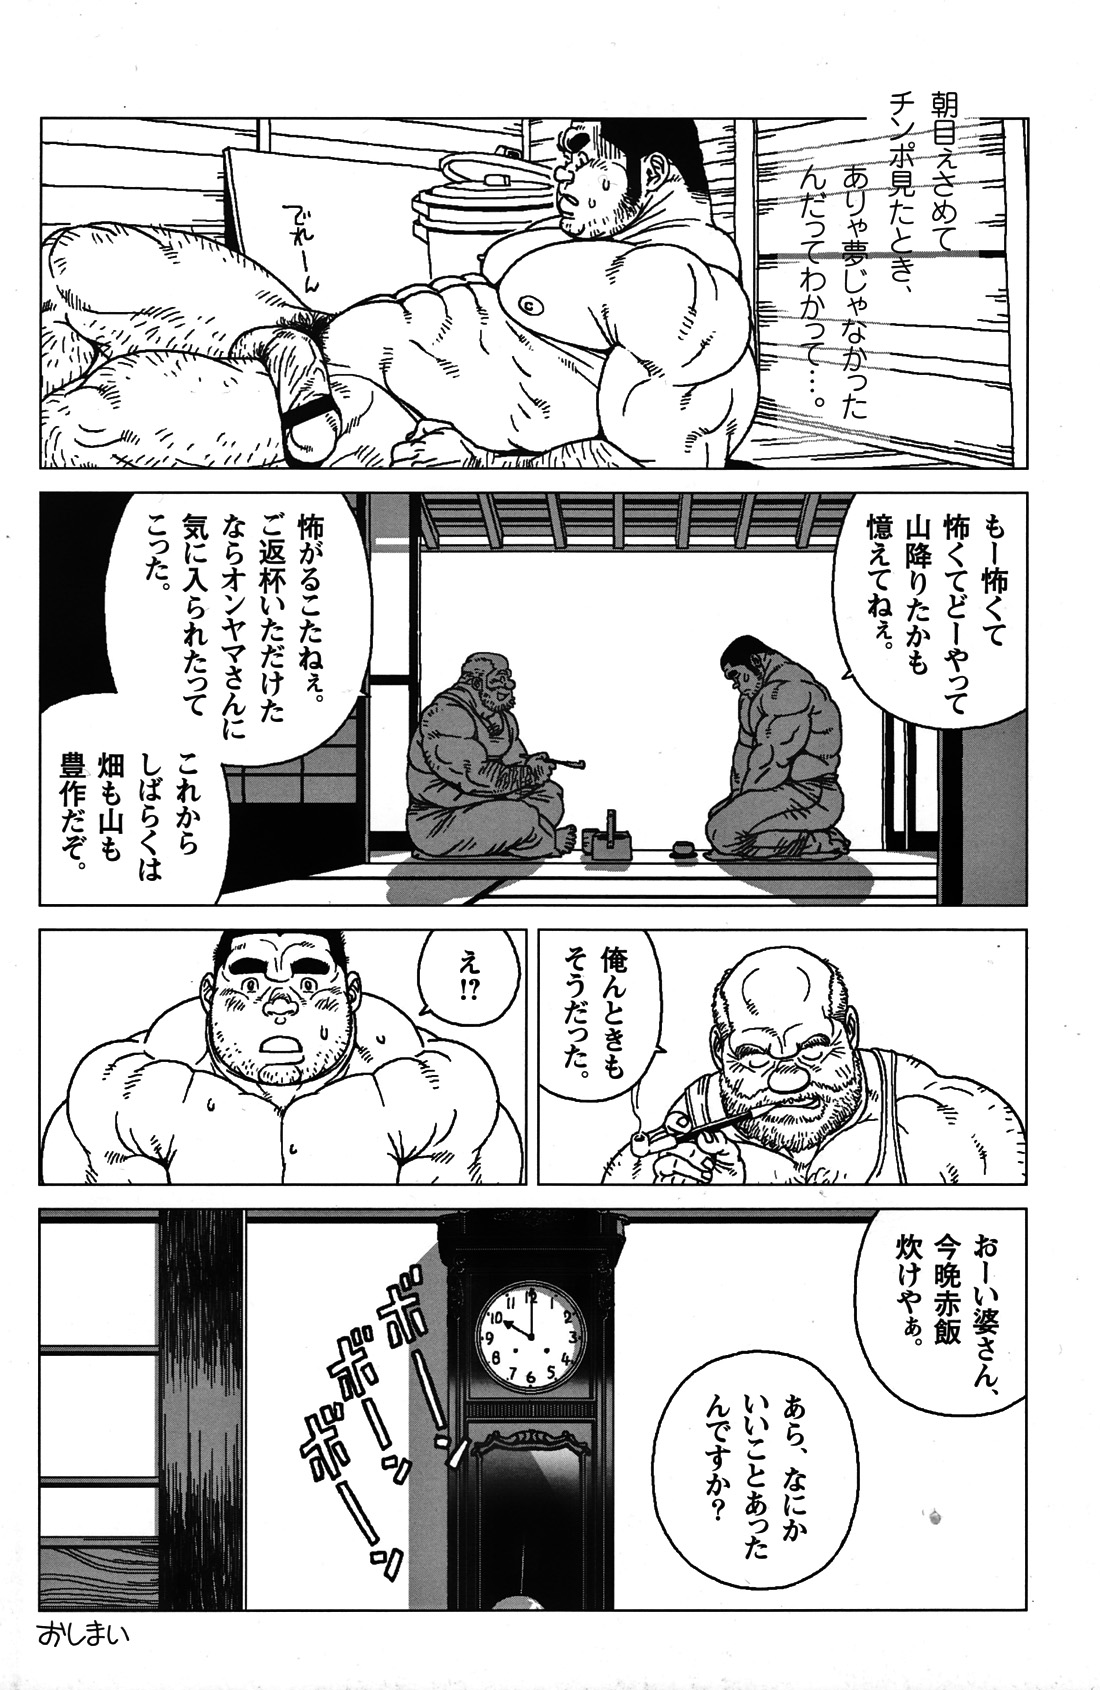 Comic G-men Gaho No. 06 Nikutai Roudousha page 9 full